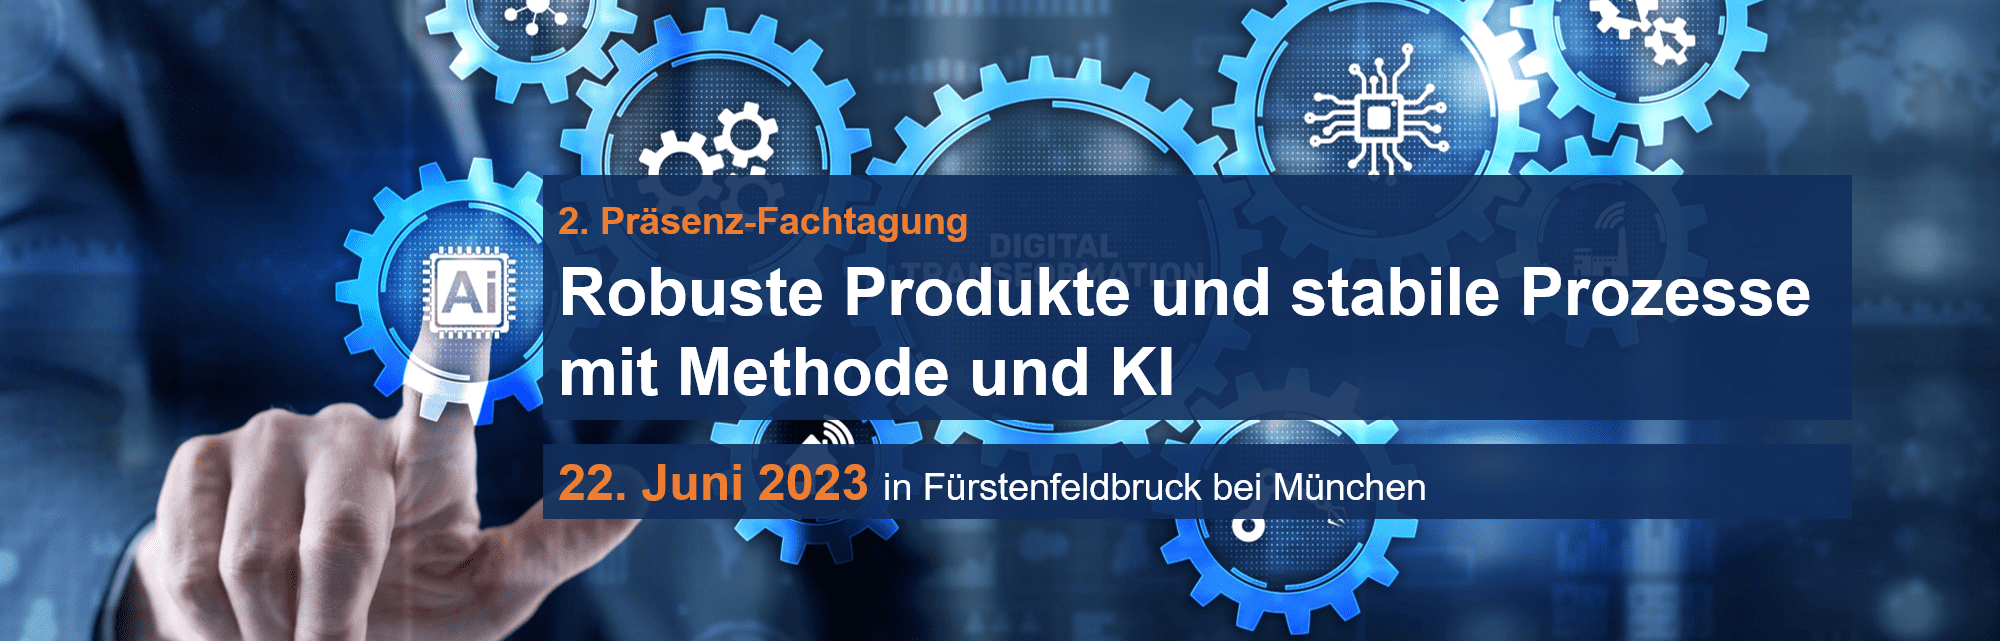 2. Präsenzfachtagung am 22. Juni 2023: Robuste Produkte und stabile Prozesse mit Methode und KI 